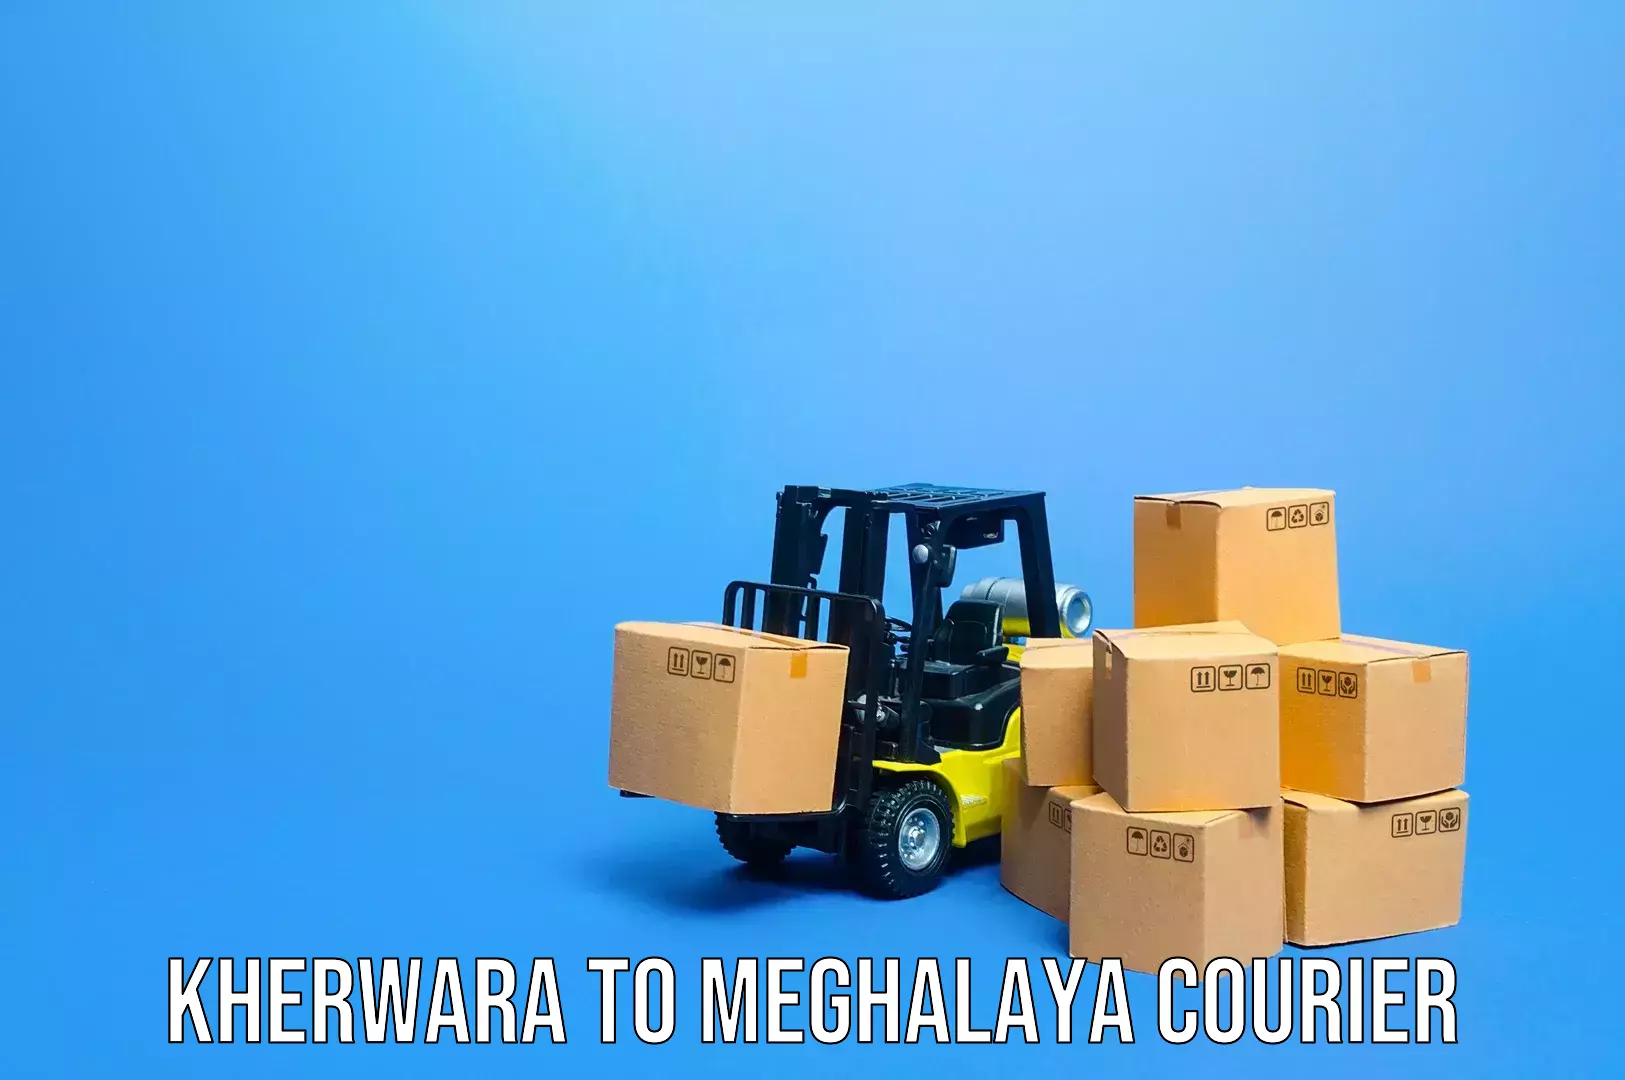 Baggage shipping service Kherwara to Meghalaya